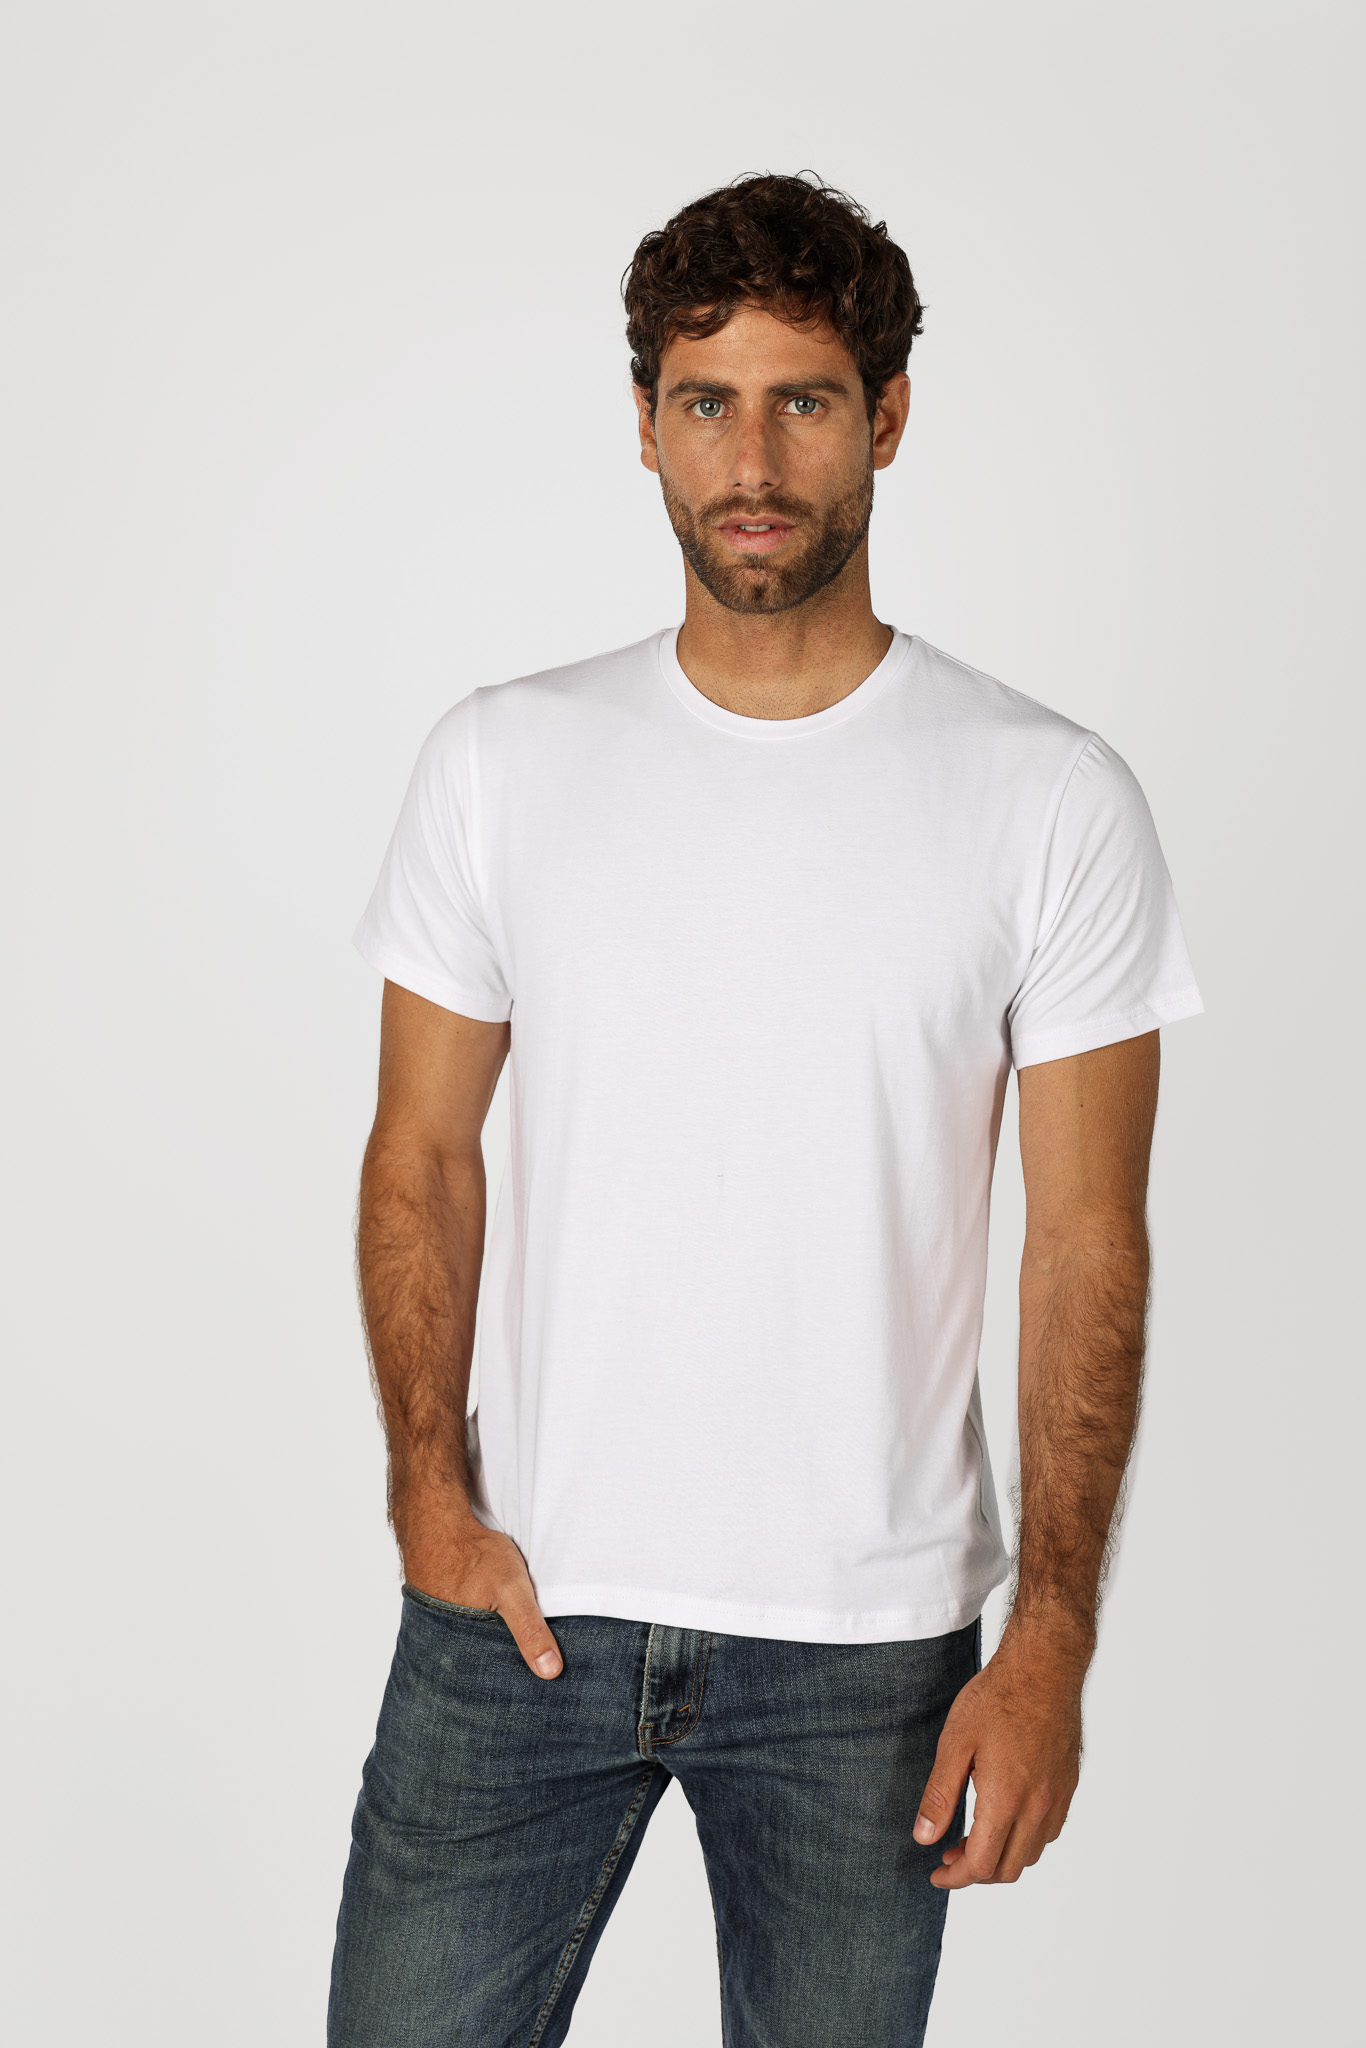 T-Shirt Custom Men - White - Imagen 1